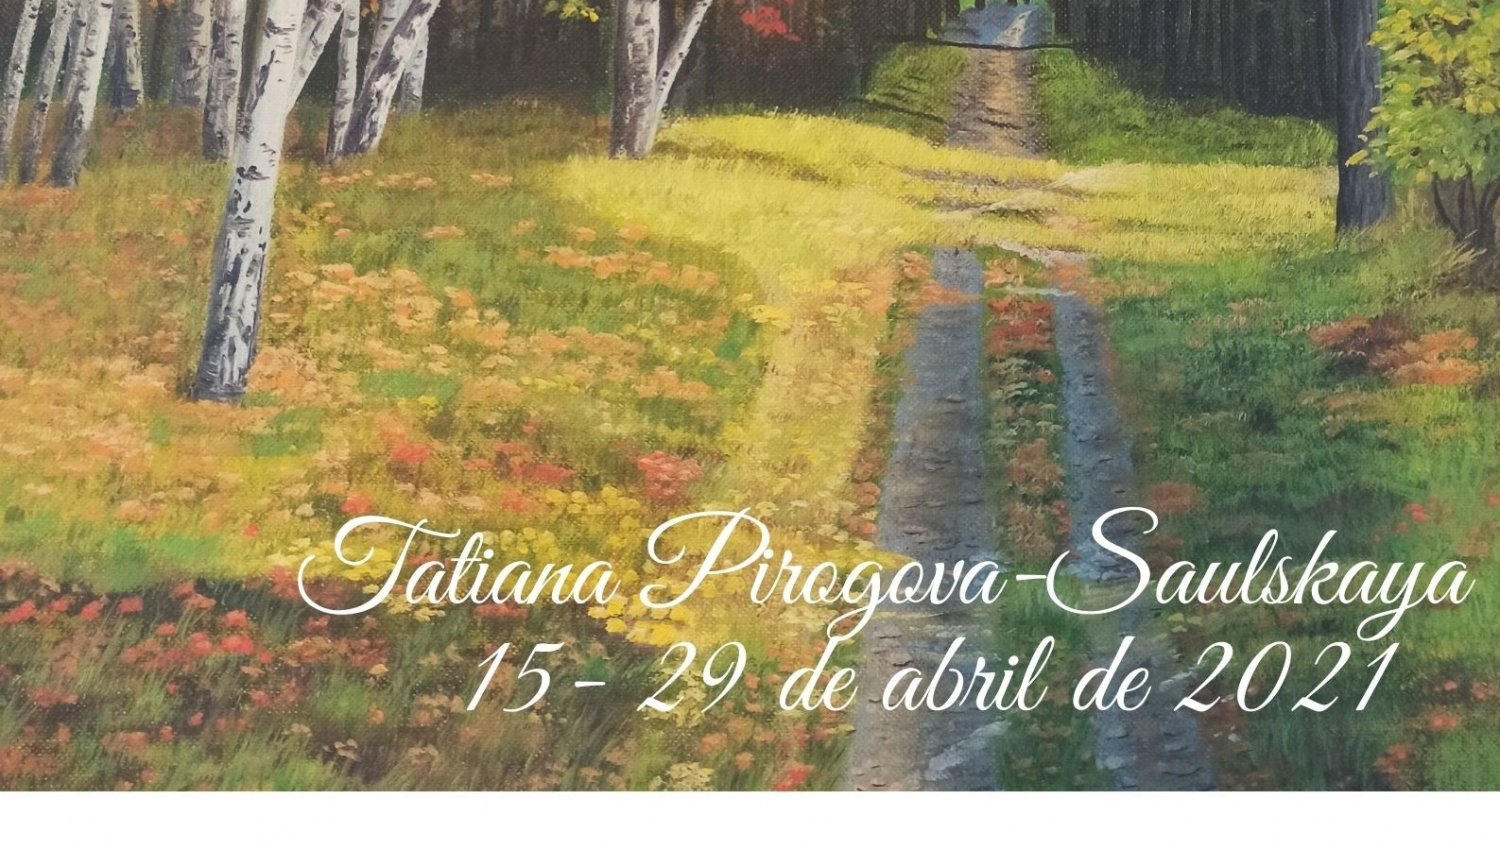 La Casa de Las Tejerinas de Estepona acoge la exposición de la artista Tatiana Pirogova-Saulskaya